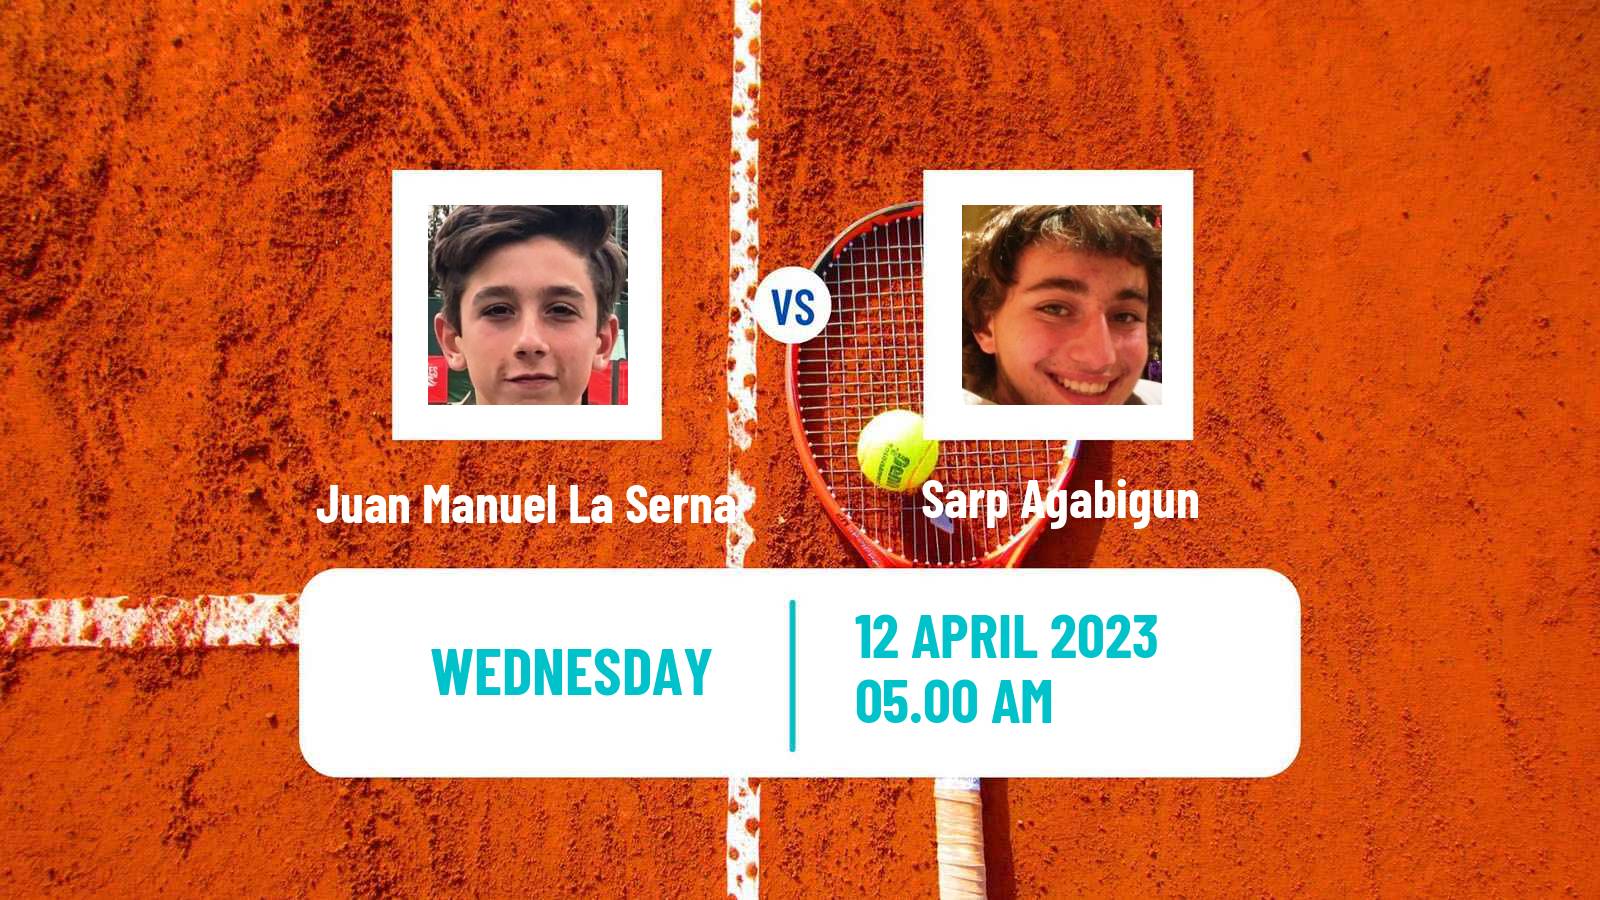 Tennis ITF Tournaments Juan Manuel La Serna - Sarp Agabigun